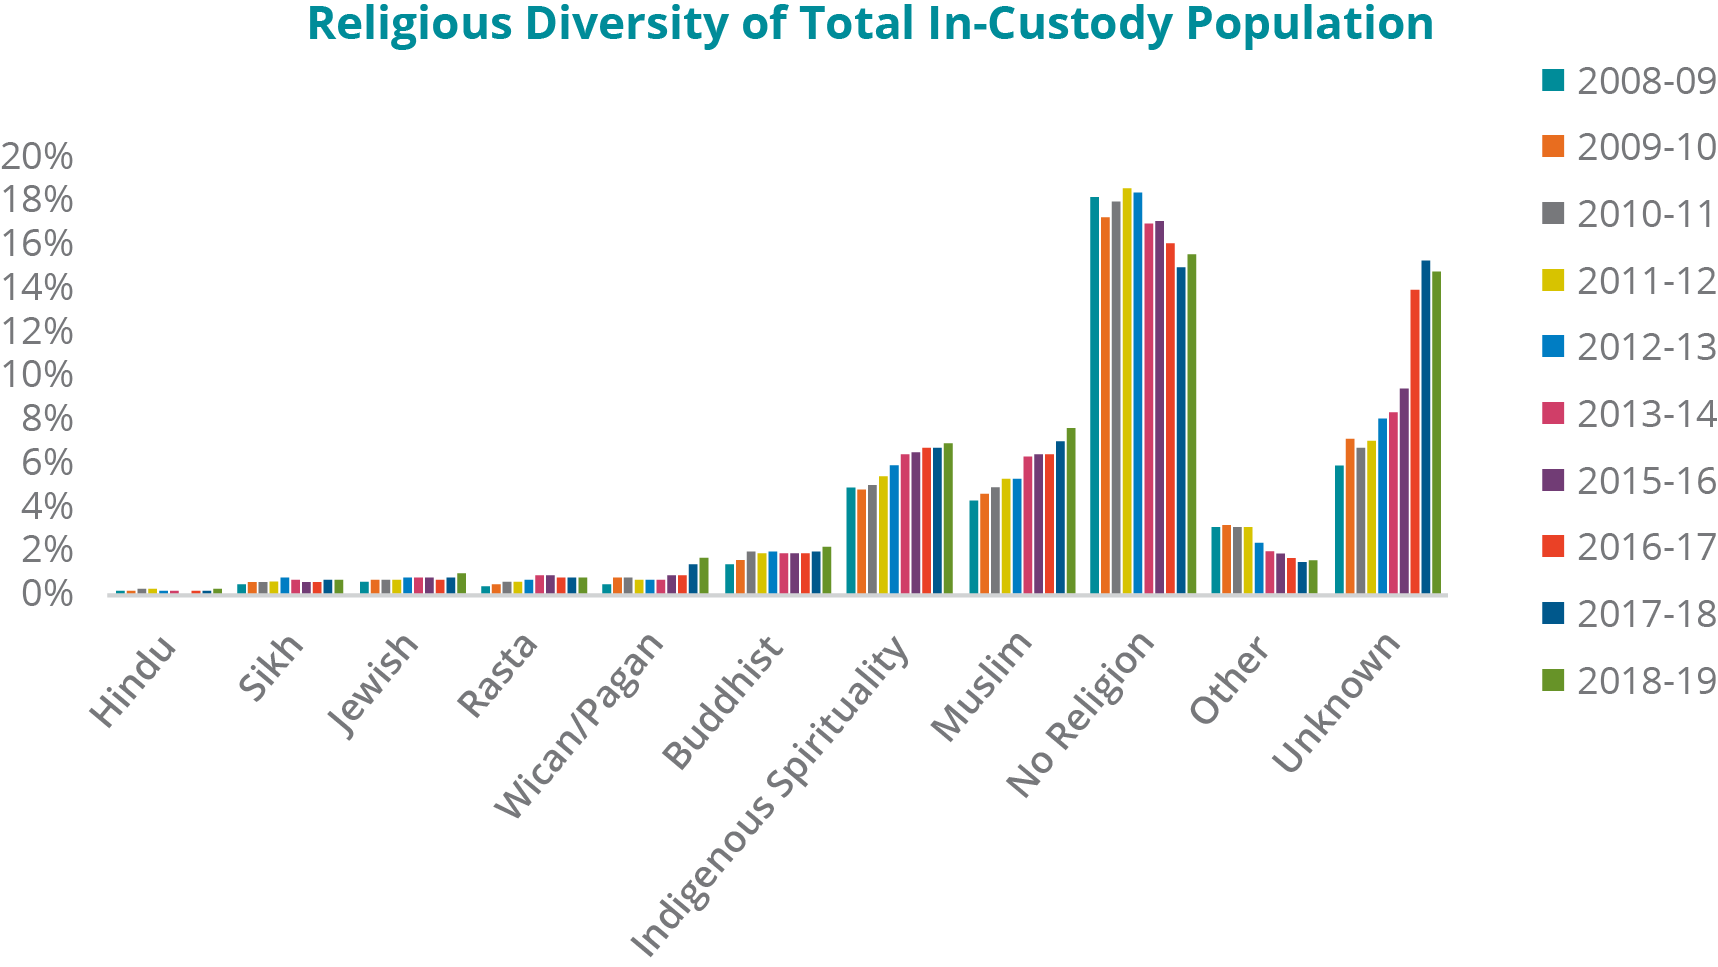 Un graphique illustrant la diversité religieuse de l'ensemble de la population sous garde, de 2008 2009 à 2018 2019 : -	Hindous : En 2008 2009, 0,24 %; 2009 2010, 0,23 %; 2010 2011, 0,29 %; 2011 2012, 0,27 %; 2012 2013, 0,22 %; 2013 2014, 0,20 %; 2015 2016, 0,16 %; 2016 2017, 0,22 %; 2017 2018, 0,26 %; et 2018 2019, 0,27 %. -	Sikhs : En 2008 2009, 0,49 %; 2009 2010, 0,57 %; 2010 2011, 0,58 %; 2011 2012, 0,67 %; 2012 2013, 0,79 %; 2013 2014, 0,76 %; 2015 2016, 0,60 %; 2016 2017, 0,59 %; 2017 2018, 0,71 %; et 2018 2019, 0,77 %. -	Juifs : En 2008 2009, 0,67 %; 2009-2010, 0,74 %; 2010 2011, 0,77 %; 2011 2012, 0,73 %; 2012 2013, 0,84 %; 2013 2014, 0,87 %; 2015 2016, 0,83 %; 2016 2017, 0,73 %; 2017 2018, 0,80 % et 2018 2019, 1,06 %. -	Rastas : En 2008 2009, 0,46 %; 2009 2010, 0,52 %; 2010 2011, 0,59 %; 2011 2012, 0,64 %; 2012 2013, 0,69 %; 2013 2014, 0,89 %; 2015 2016, 0,90 %; 2016 2017, 0,86 %; 2017 2018, 0,79 %; et 2018 2019, 0,86 %. -	Wiccans/païens : En 2008 2009, 0,52 %; 2009 2010, 0,81 %; 2010 2011, 0,80 %; 2011 2012, 0,75 %; 2012 2013, 0,75 %; 2013 2014, 0,76 %; 2015 2016, 0,93 %; 2016 2017, 0,92 %; 2017 2018, 1,40 %; et 2018 2019, 1,79 %. -	Bouddhistes : En 2008 2009, 1,48 %; 2009 2010, 1,60 %; 2010 2011, 2,10 %; 2011 2012, 1,96 %; 2012 2013, 2,08 %; 2013 2014, 1,94 %; 2015 2016, 1,98 %; 2016 2017, 1,95 %; 2017 2018, 2,06 %; et 2018 2019, 2,24 %. -	Spiritualité autochtone : En 2008 2009, 5,02 %; 2009 2010, 4,86 %; 2010 2011, 5,09 %; 2011 2012, 5,51 %; 2012 2013, 6,05 %; 2013 2014, 6,56 %; 2015 2016, 6,61 %; 2016 2017, 6,87 %; 2017 2018, 6,82 %; et 2018 2019, 7,00 %. -	Musulmans : En 2008 2009, 4,35 %; 2009-2010, 4,76 %; 20109-2011, 4,99 %; 2011 2012, 5,40 %; 2012 2013, 5,45 %; 2013 2014, 6,42 %; 2015 2016, 6,56 %; 2016 2017, 6,59 %; 2017 2018, 7,11 %; et 2018 19, 7,73 %. -	Aucune religion signalée : En 2008 2009, 18,45 %; 2009 2010, 17,54 %; 2010 2011, 18,24 %; 2011 2012, 18,89 %; 2012 2013, 18,69 %; 2013 2014, 17,23 %; 2015 2016, 17,37 %; 2016 2017, 16,30 %; 2017 2018, 15,25 %; et 2018 2019, 15,80 %. -	Autres religions : En 2008 2009, 3,17 %; 2009 2010, 3,23 %; 2010 2011, 3,14 %; 2011 2012, 3,13 %; 2012 2013, 2,45 %; 2013 2014, 2,03 %; 2015 2016, 1,95 %; 2016 2017, 1,77 %; 2017 2018, 1,59 %; et 2018 2019, 1,60 %. -	Religion inconnue : En 2008 2009, 6,06 %; 2009 2010, 7,26 %; 2010 2011, 6,83 %; 2011 2012, 7,19 %; 2012 2013, 8,14 %; 2013 2014, 8,45 %; 2015 2016, 9,59 %; 2016 2017, 14,21 %; 2017 2018, 15,48 %; et 2018 2019, 14,98 %. Remarque : Aucune donnée concernant l'exercice 2014 2015 n'était accessible dans l'Entrepôt de données du SCC.